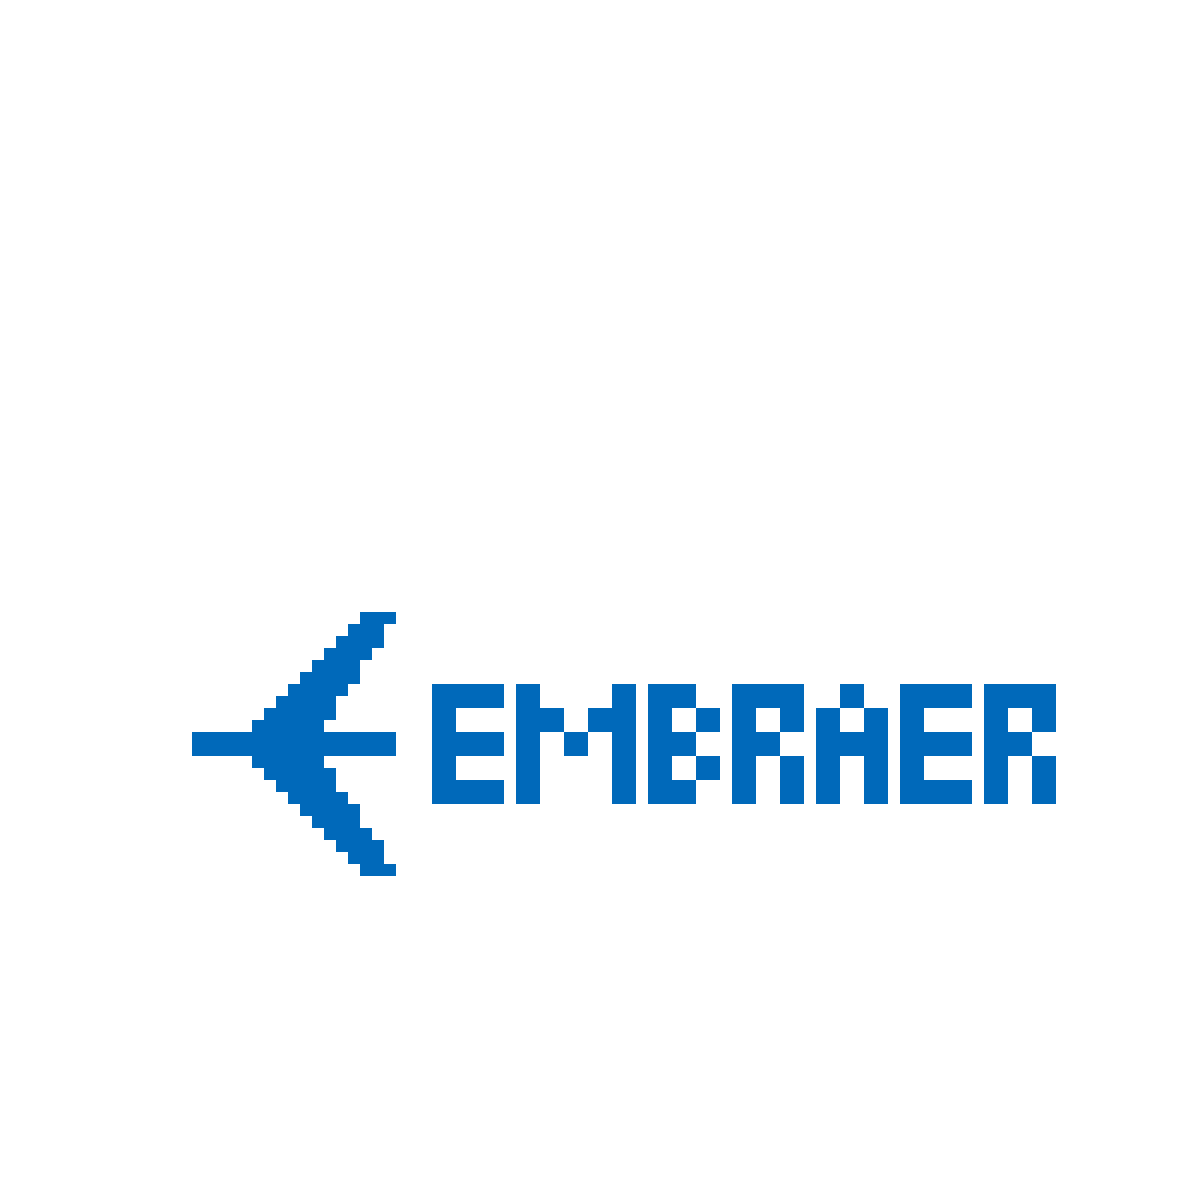 Embraer Logo - Pixilart - embraer logo by Efositix-drawin